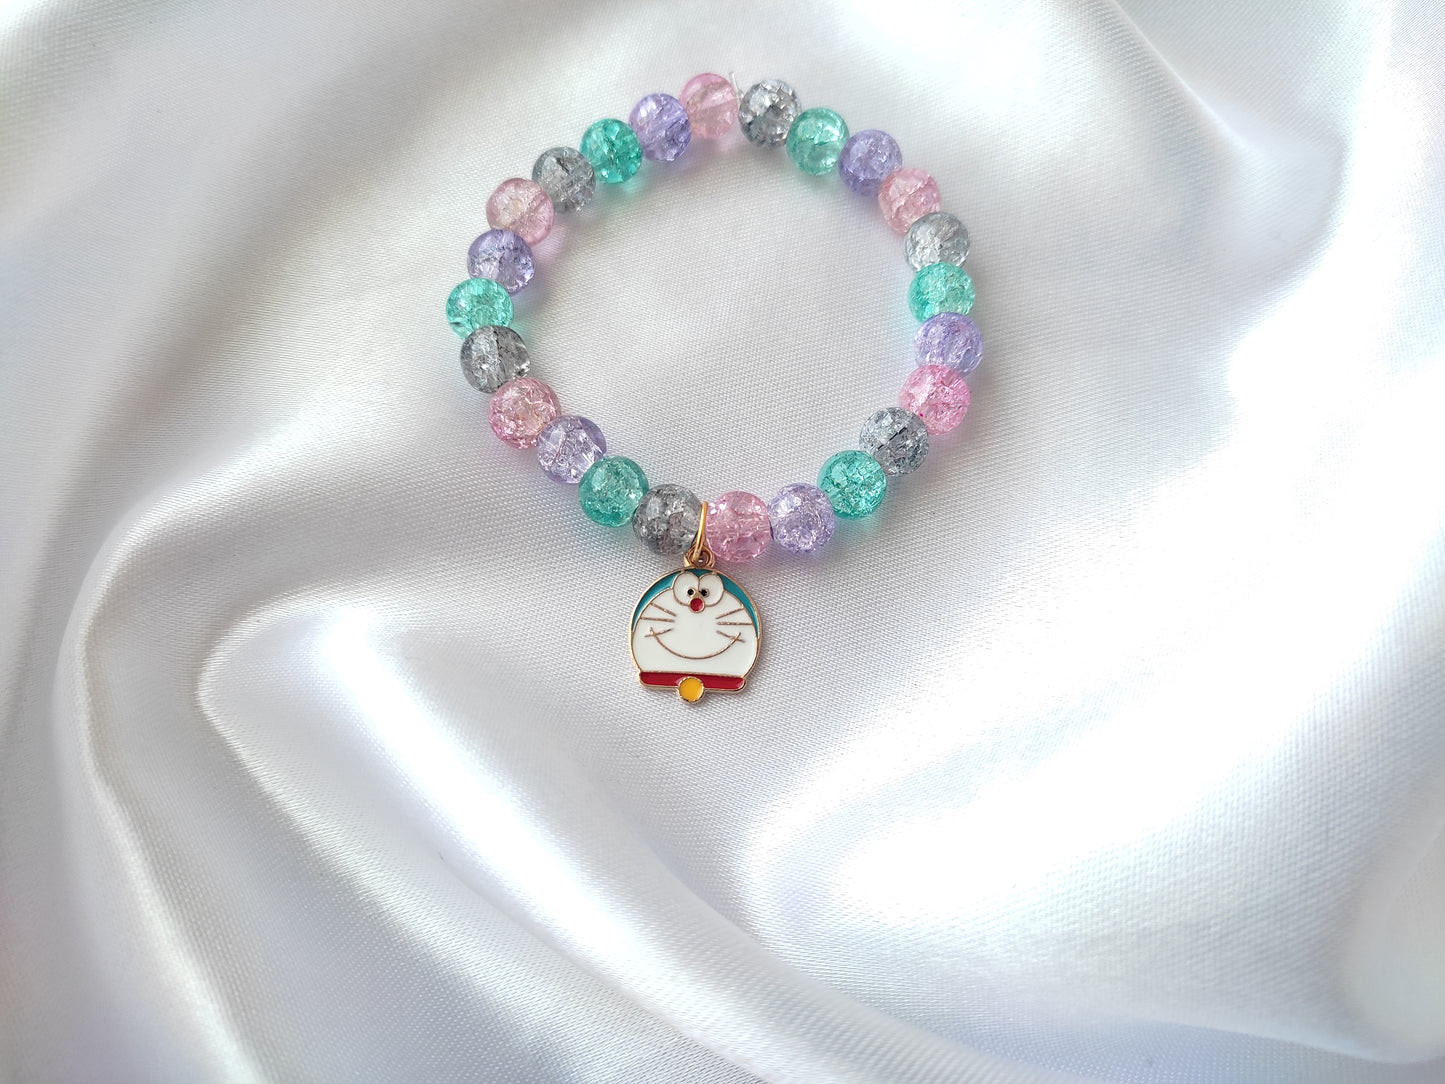 Cute doremon multi-colour beads bracelet for women and girls